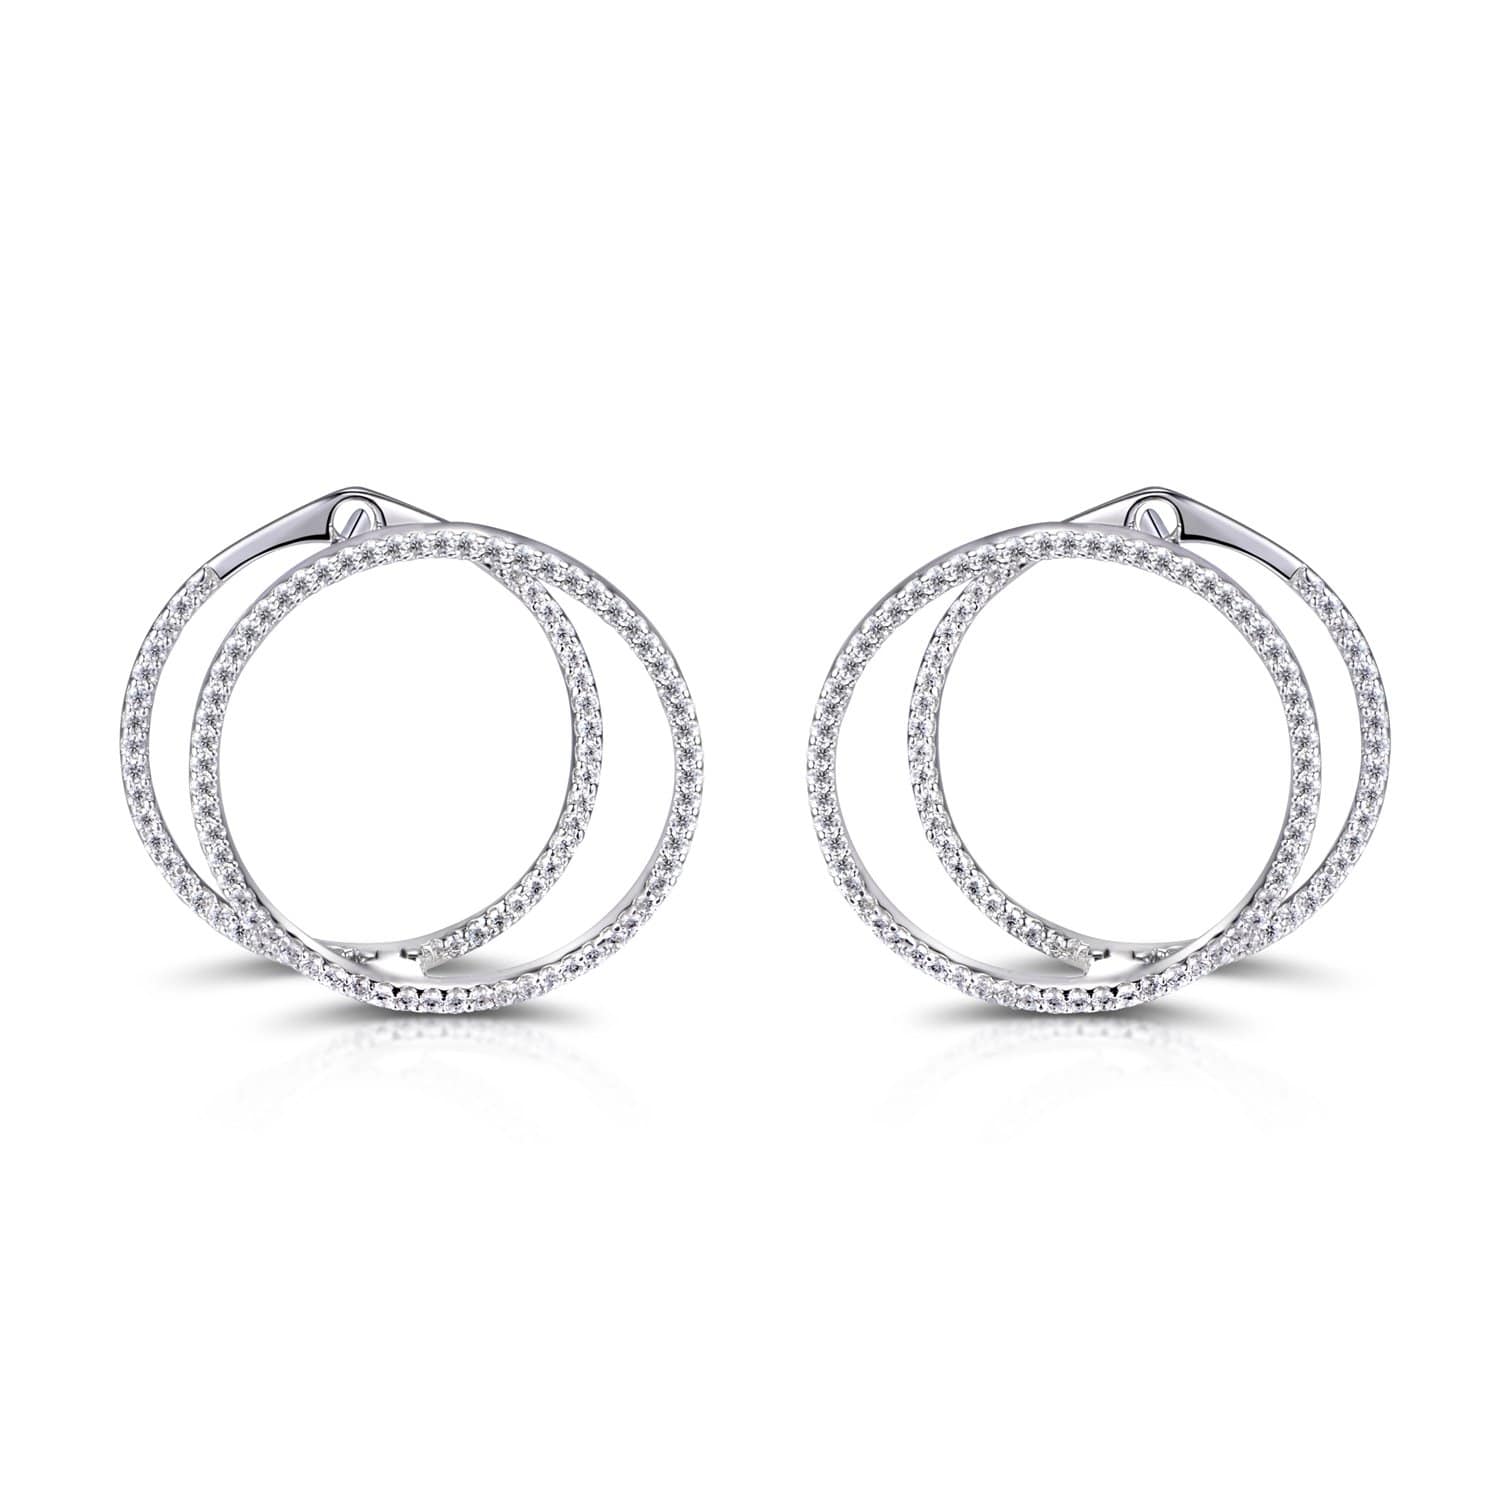 Lynora Jewellery Earring Sterling Silver Forever Earrings Sterling Silver